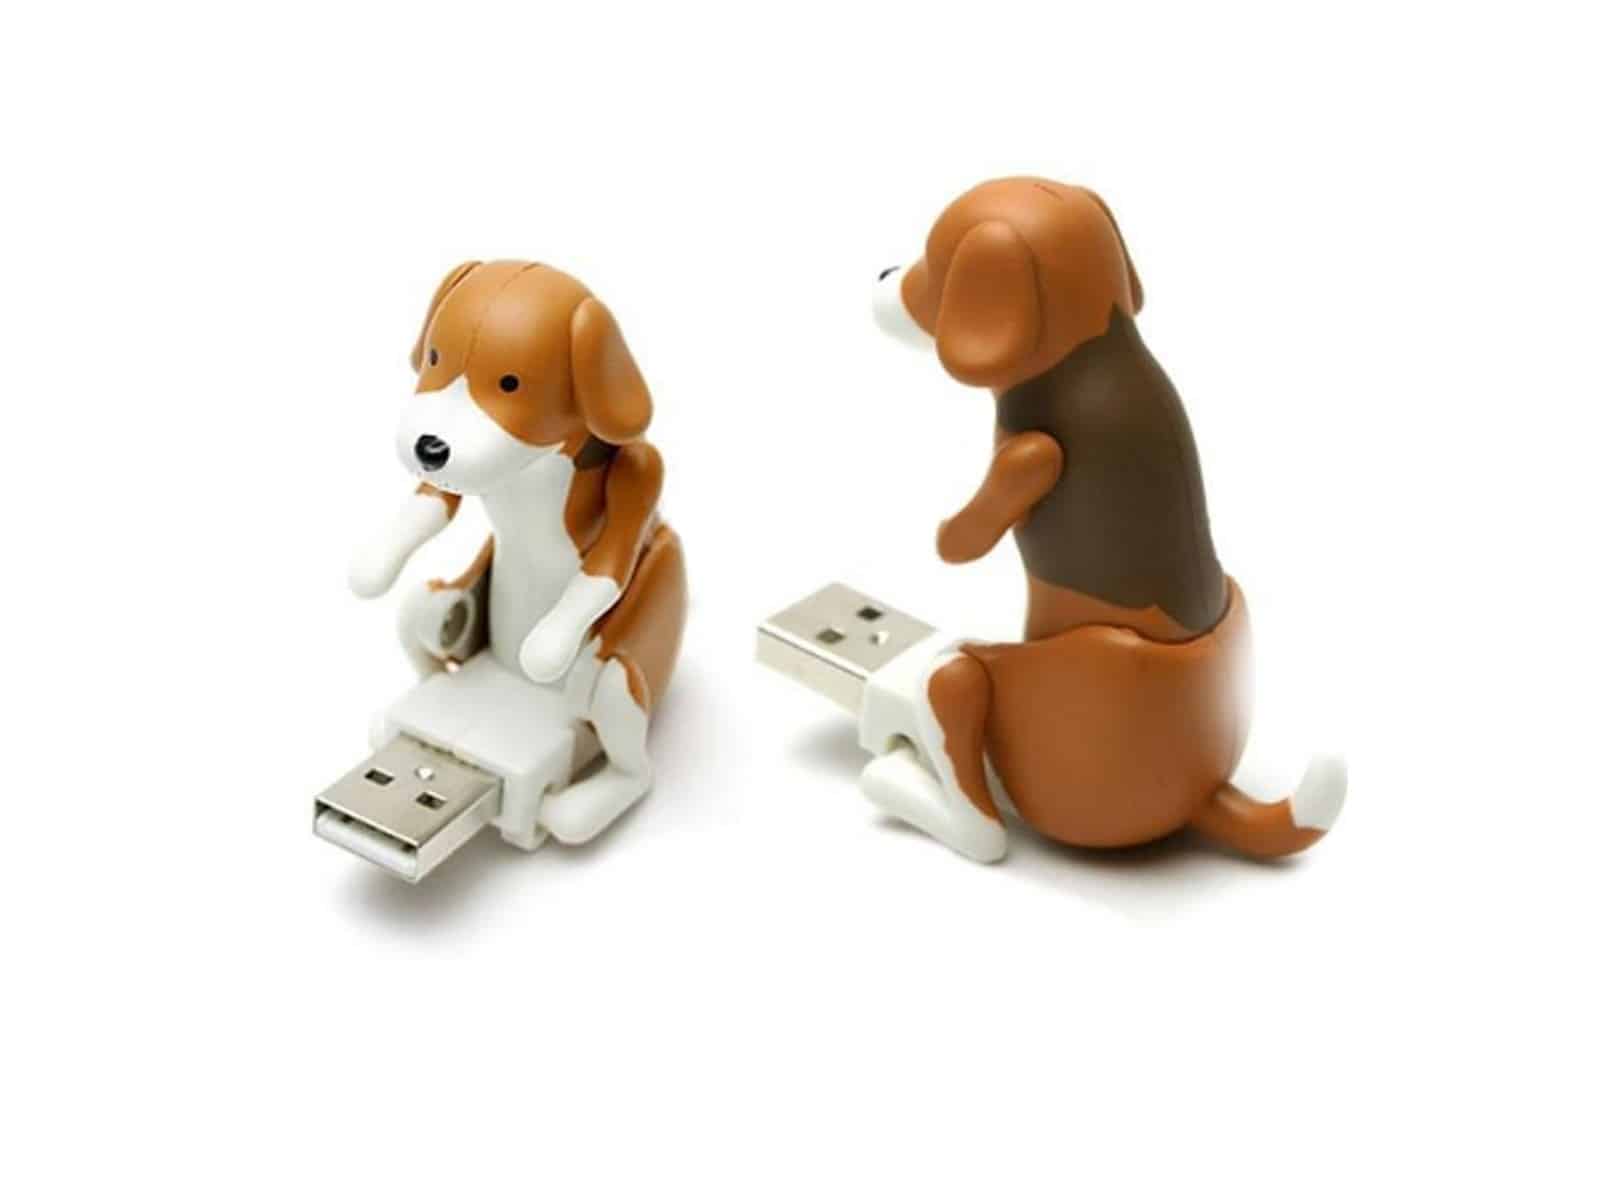 Wieder da! Der poppende USB Hund für nur 2,27 Euro (gratis Versand) aus China! Das Gadget fürs Büro!